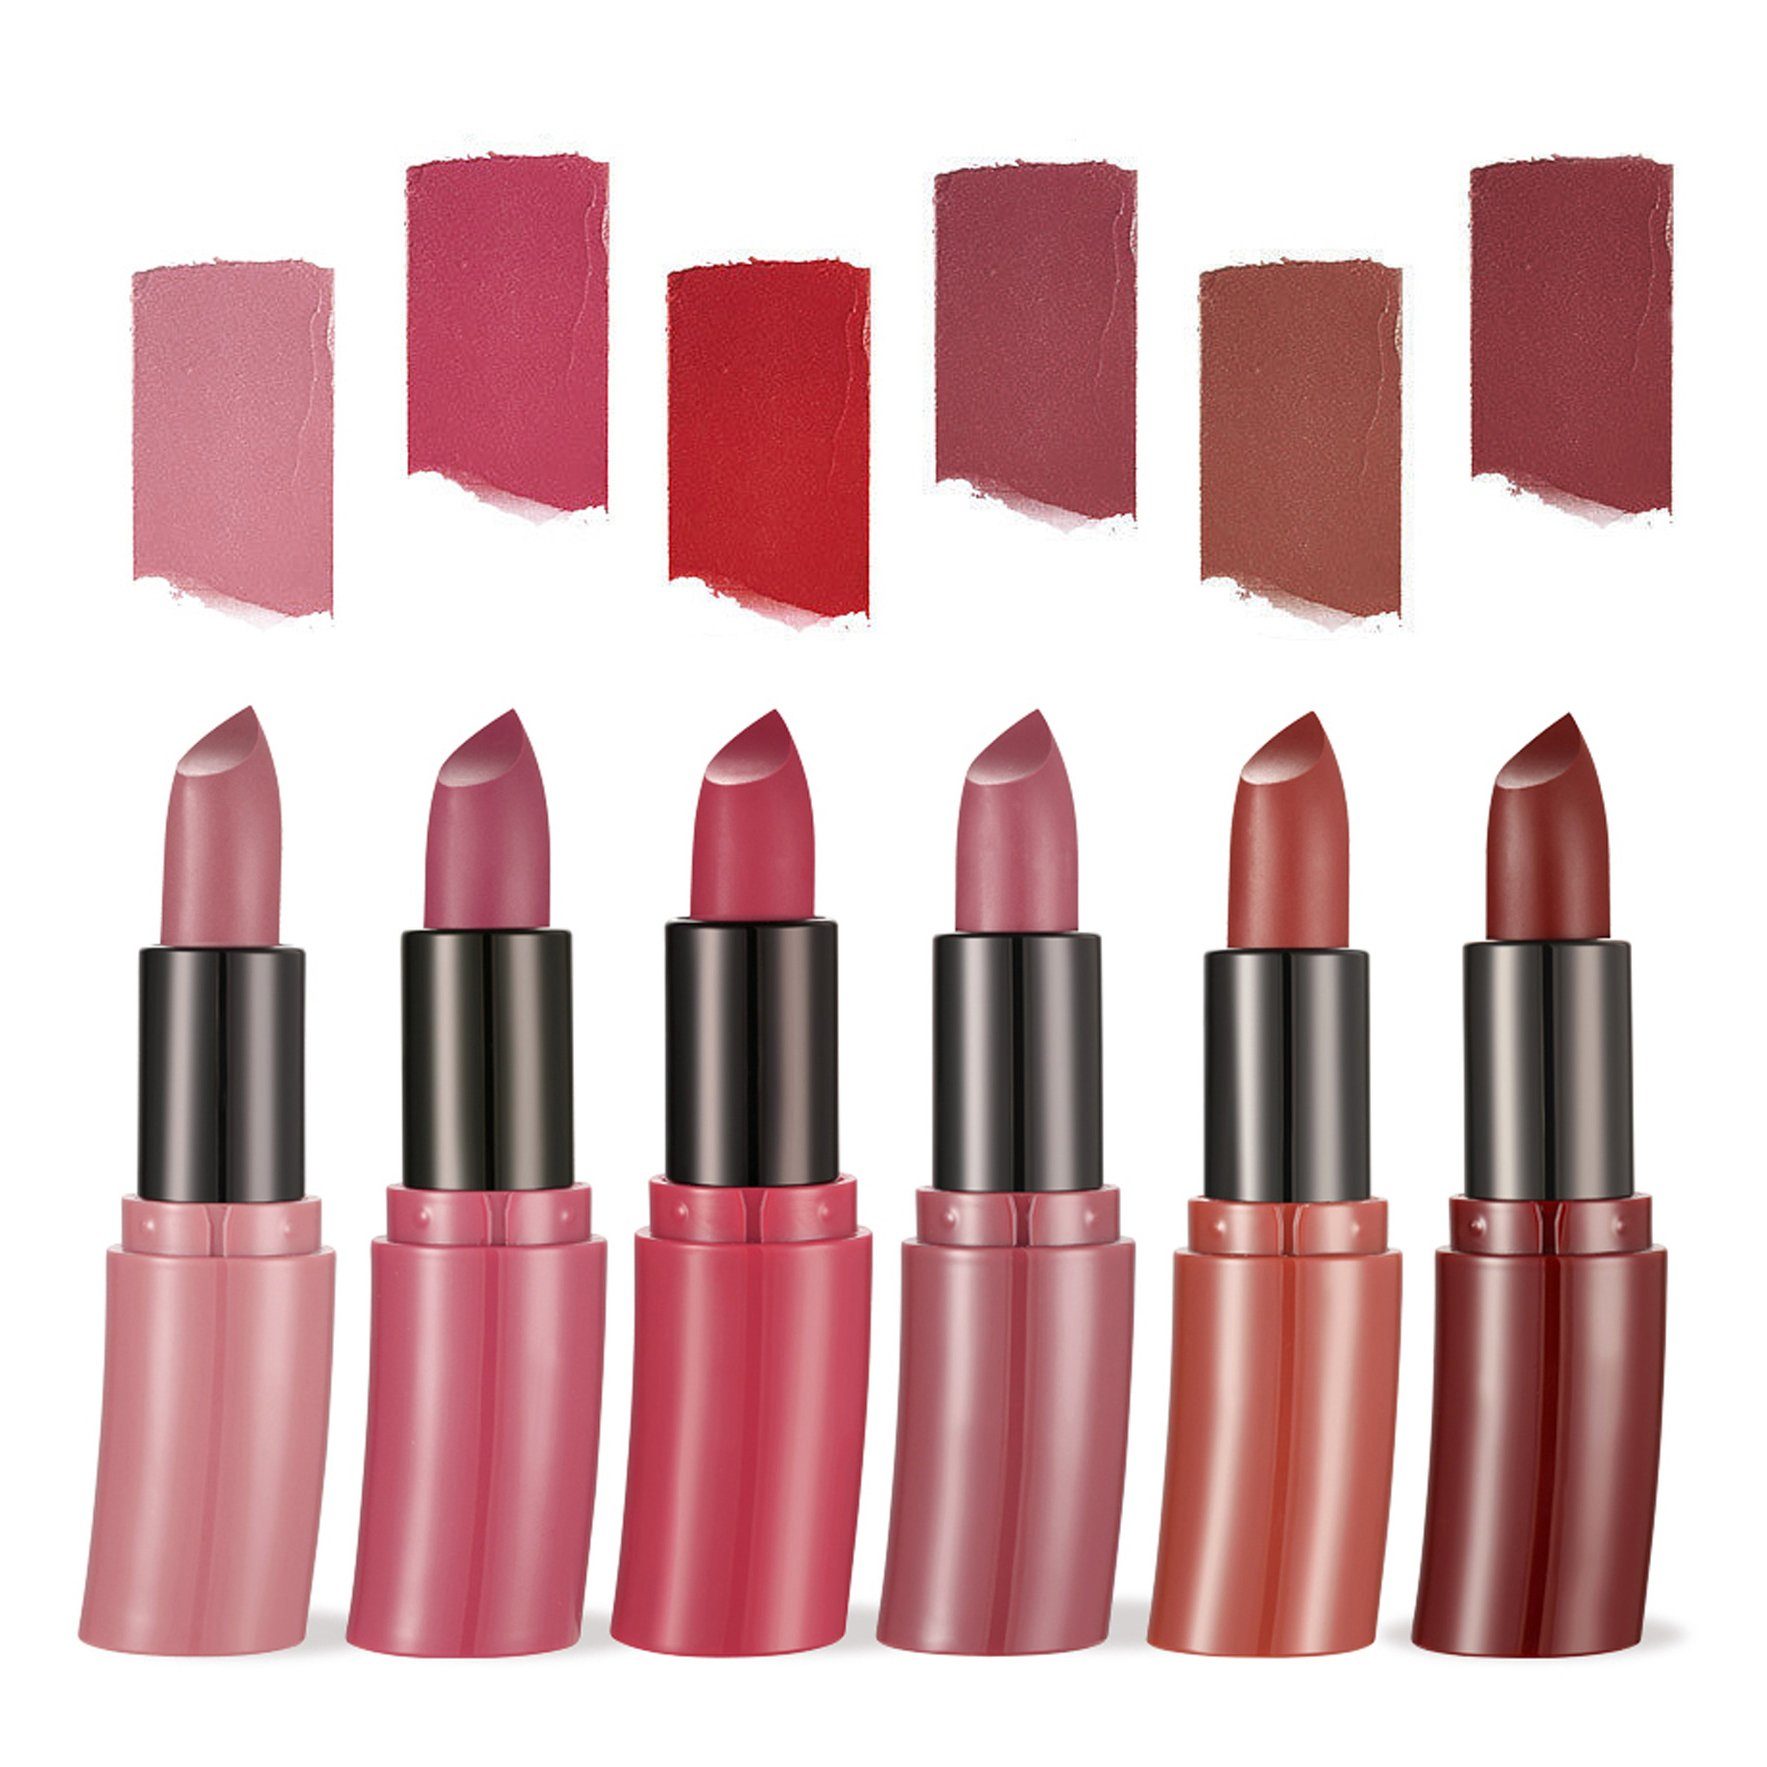 Haiaveng Lippenstift-Set 6 Farben Matt Ink Lippenstift Set Flüssiger Lippenstift Set, Samt Rot Nude Lipstick Wasserdichte Makeup Lippenstifte | Lippenstifte